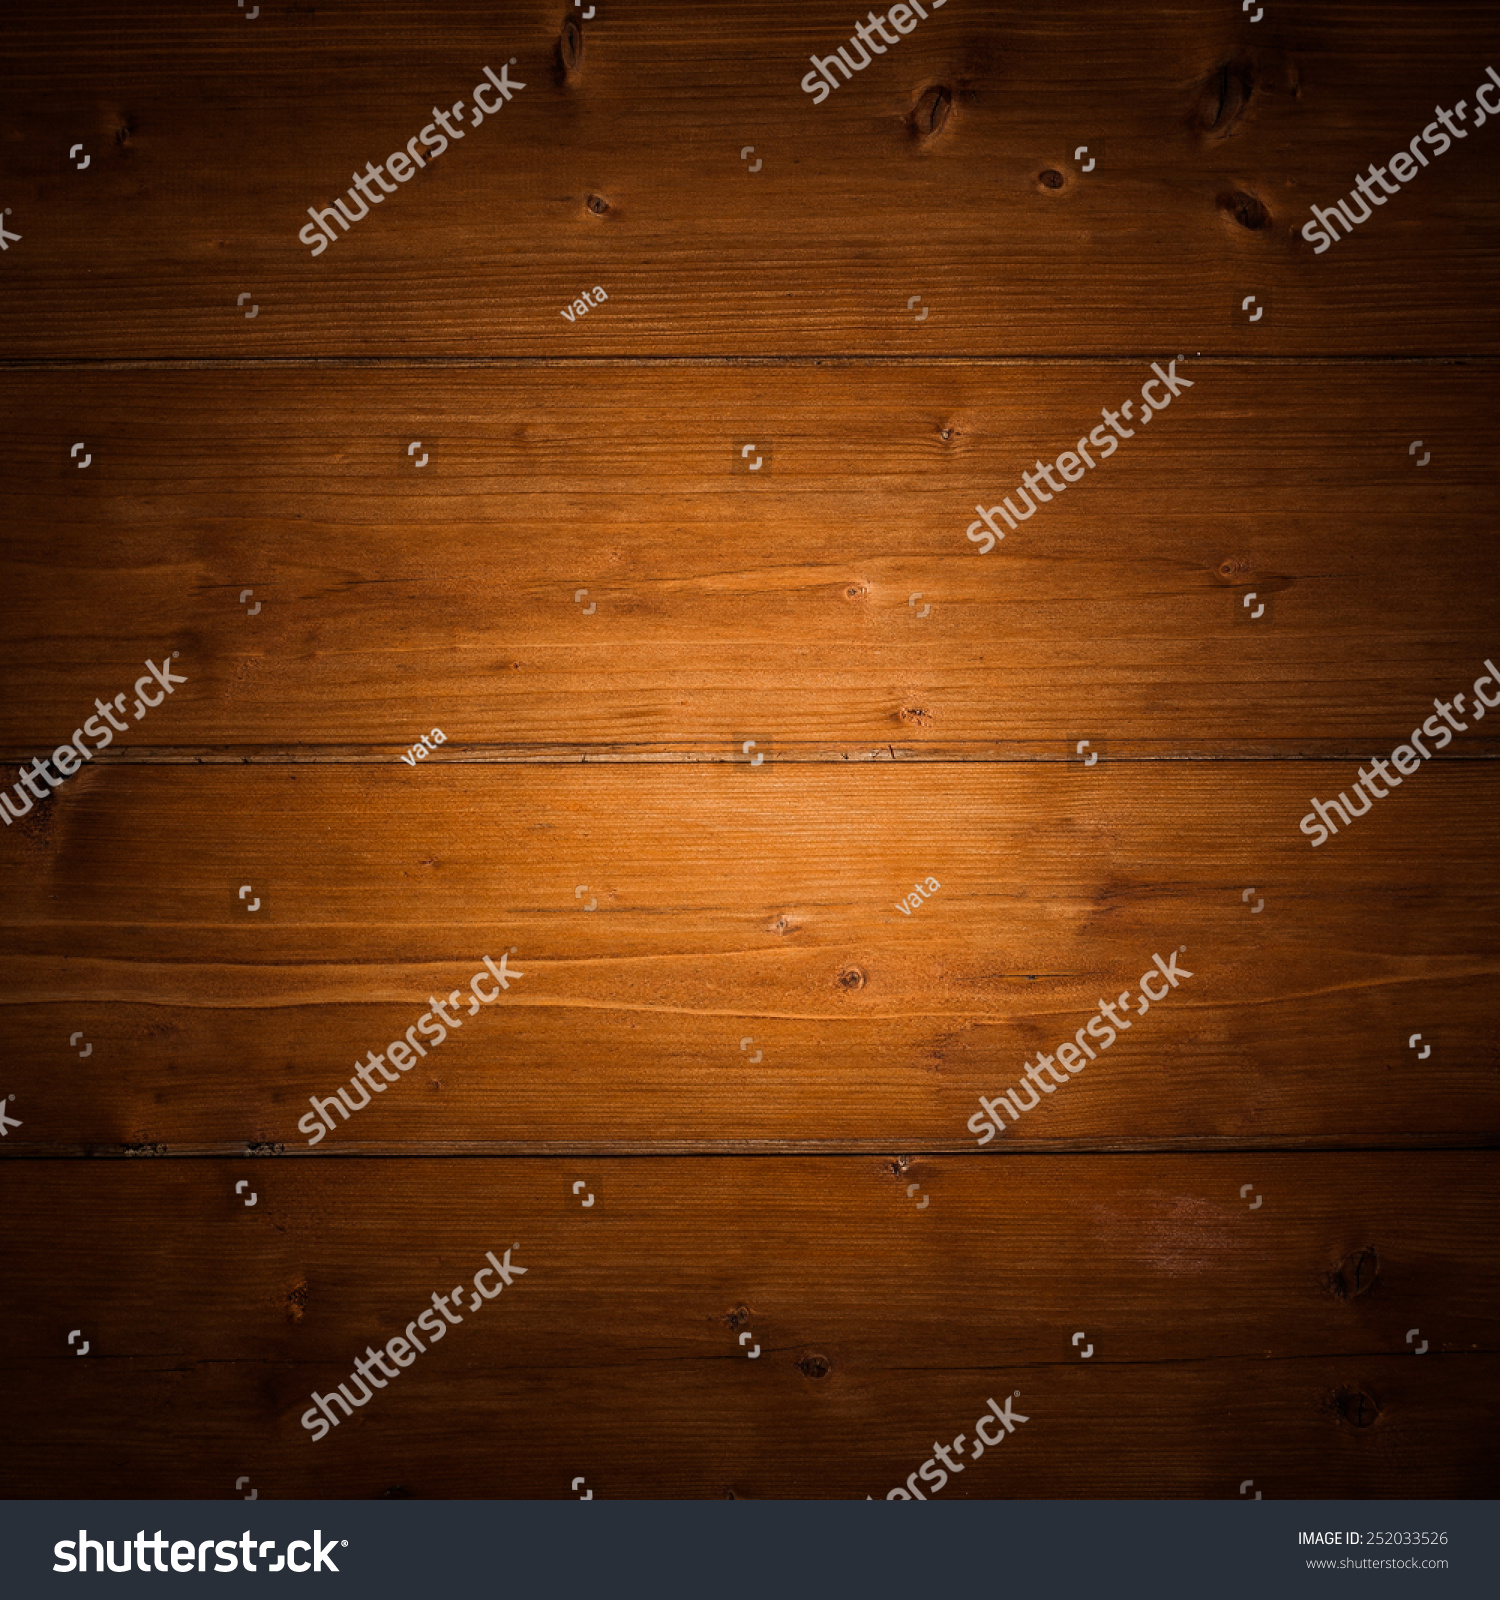 Wooden Texture #252033526